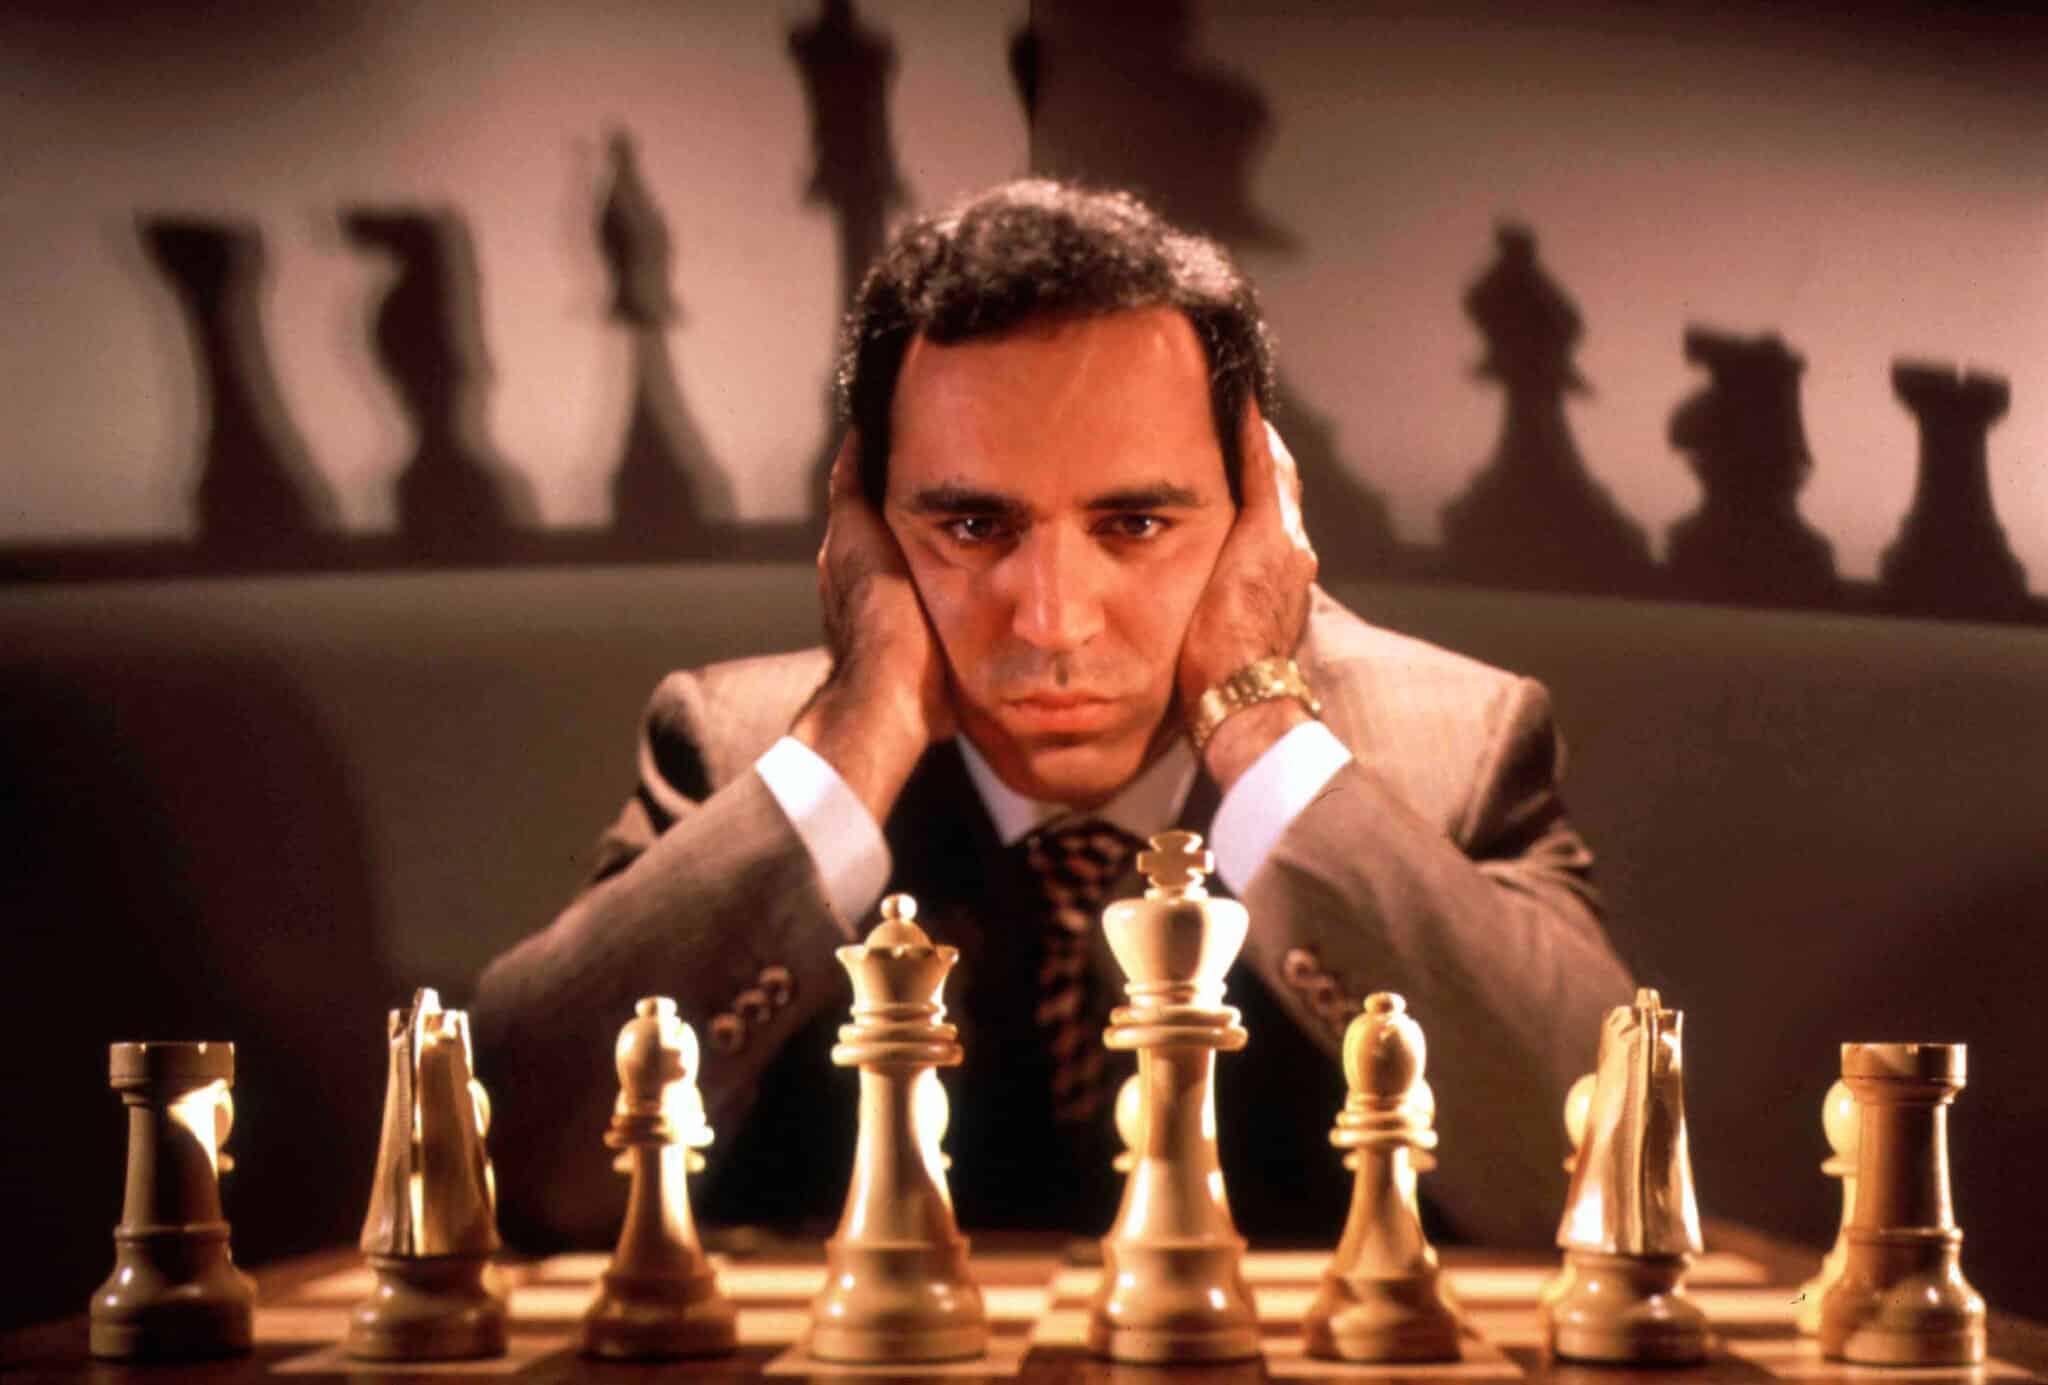 O gambito do rei: Bobby Fischer e a era pop do xadrez